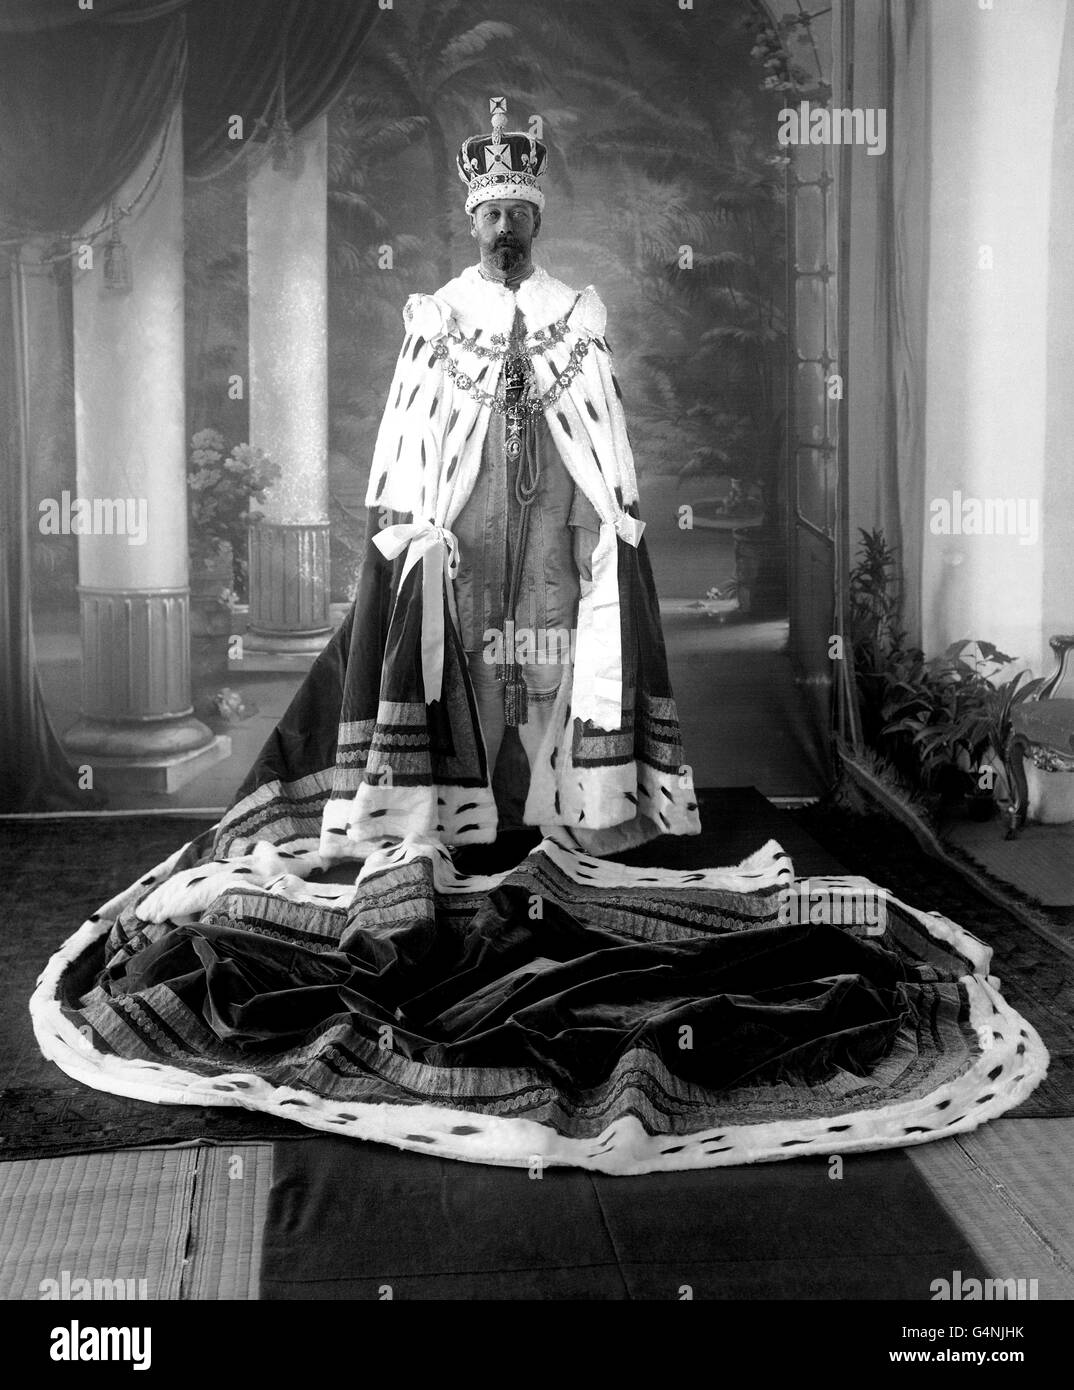 Le roi George V pose dans les robes de Coronation pour le Delhi Durbar de décembre 1911. Le roi doit être proclamé empereur de l'Inde et trouvera New Delhi comme la nouvelle capitale de l'Inde britannique pour remplacer Calcutta. Banque D'Images